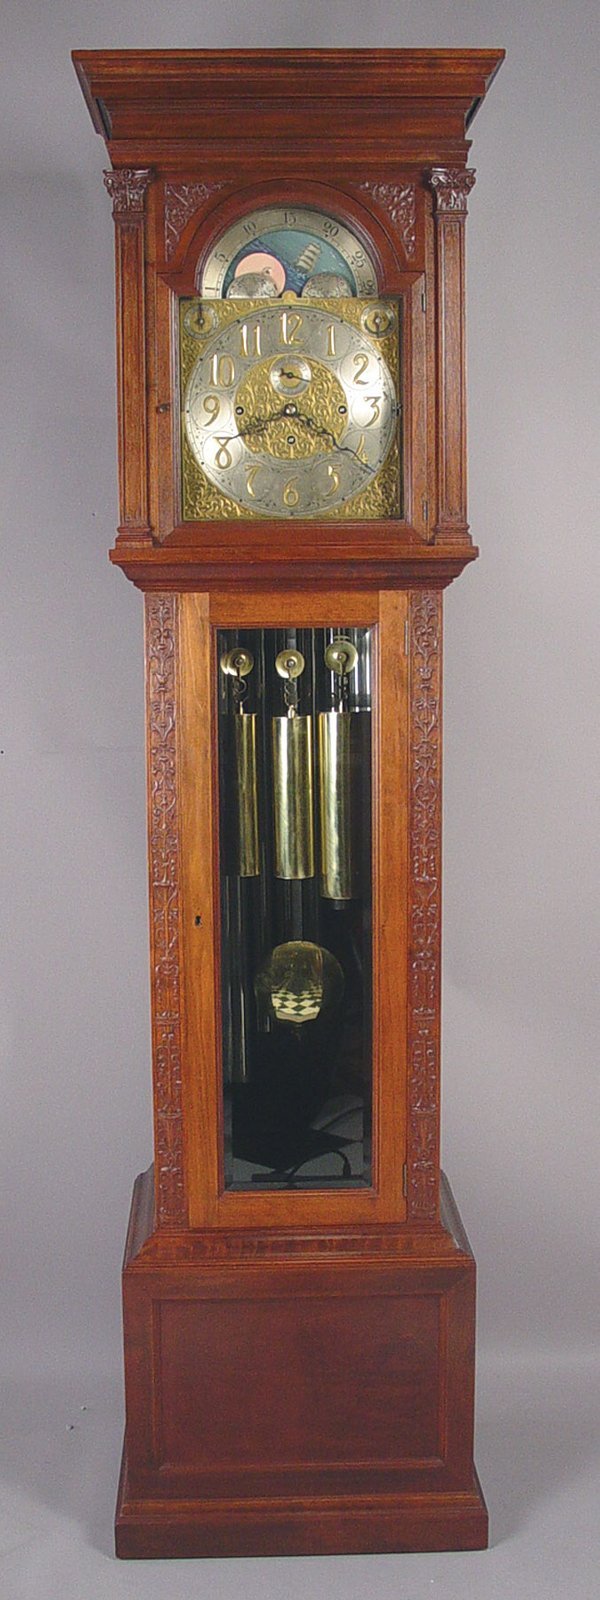 Tiffany & Co. NY Carved Mahogany Triple Chime Hall Clock